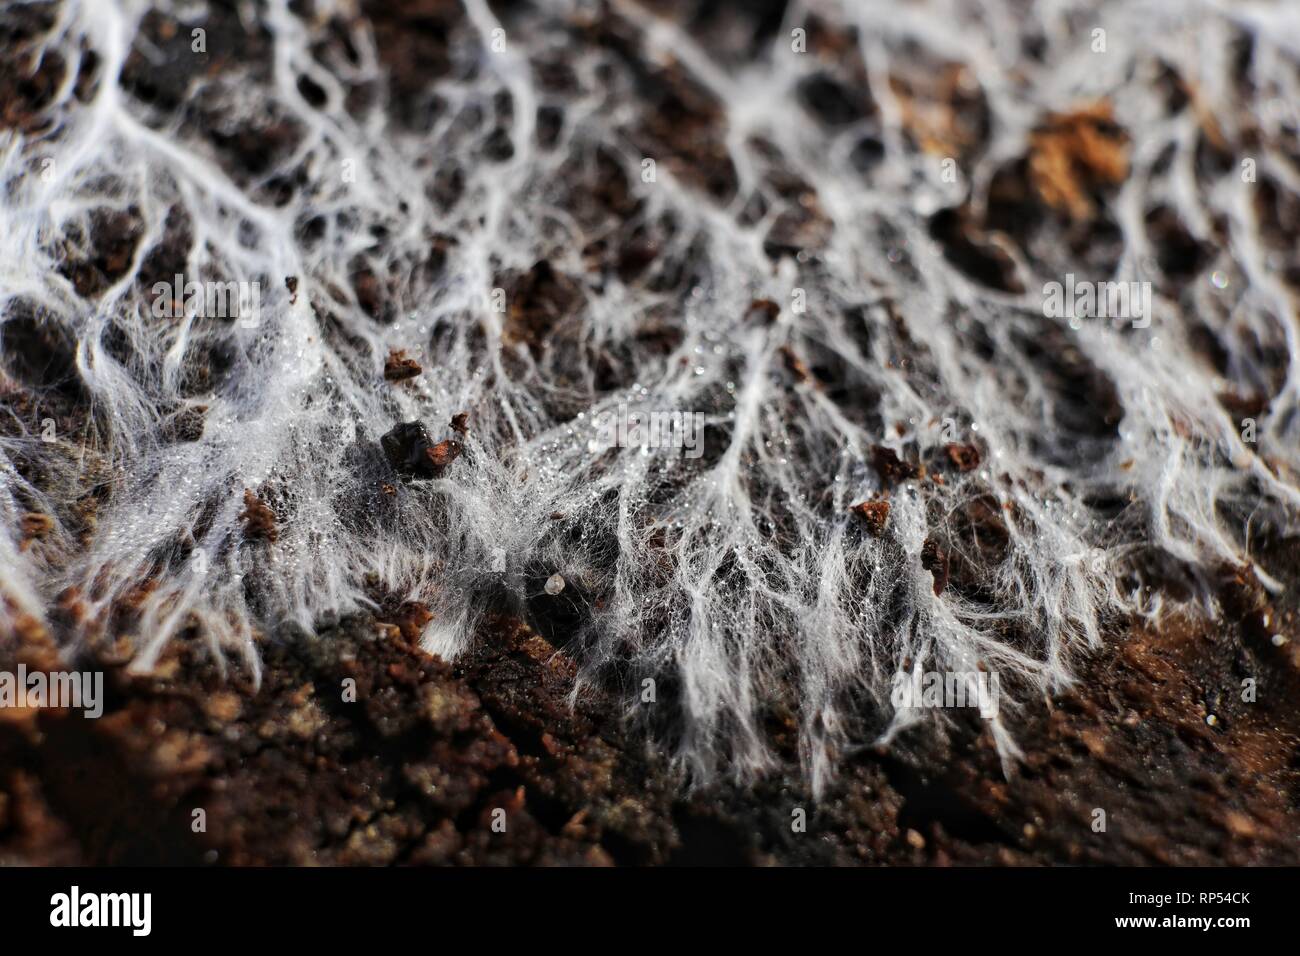 Ein Makro Bild von pilzmycel oder Hyphen ramifying über die Oberfläche aus einem Holzblock. Diese Mizellaren Netzwerk in der Regel nur u-Auftritt. Stockfoto